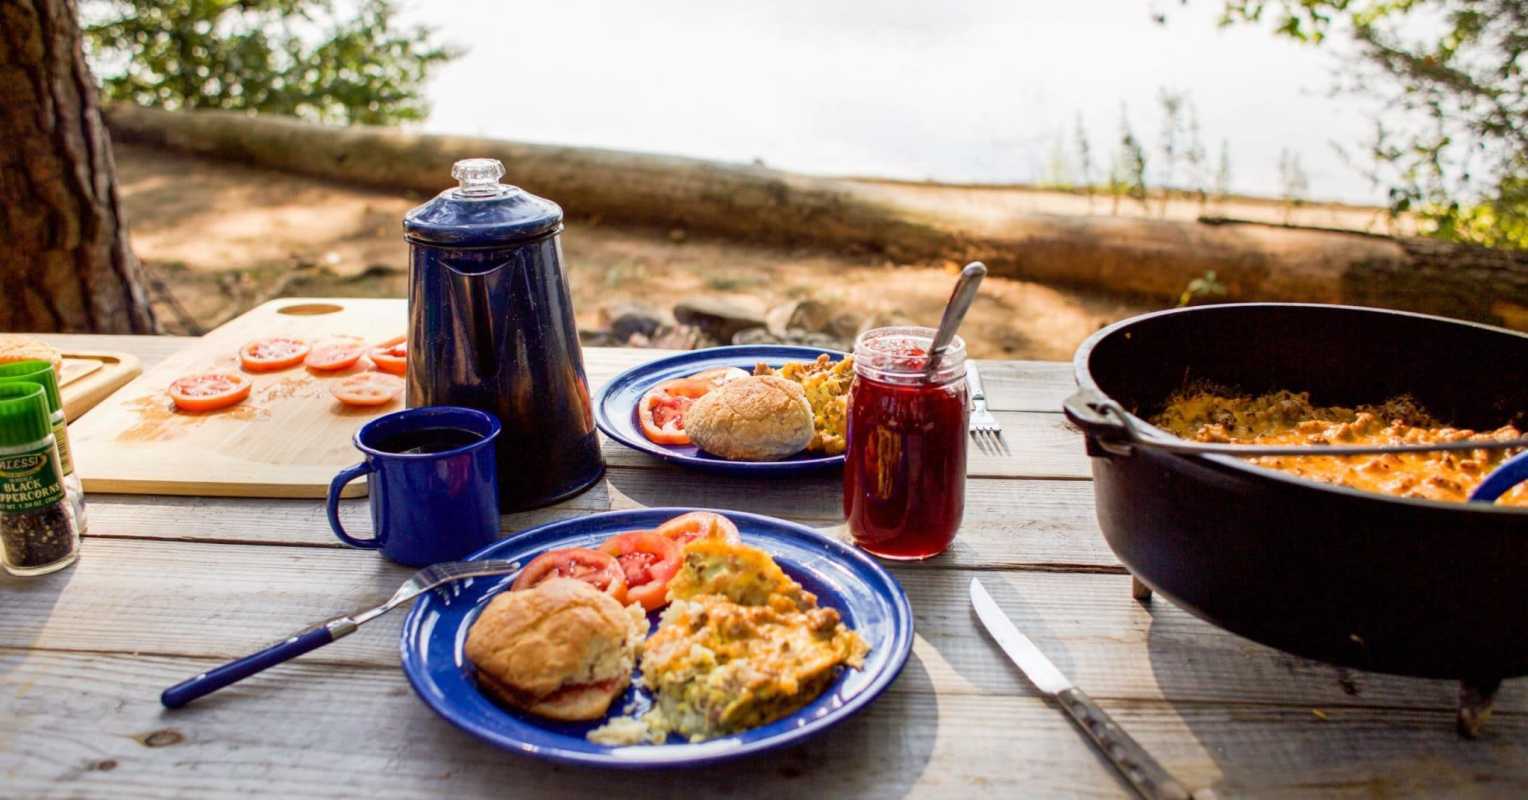 Una escena de campament amb una olla de cafè, un plat blau amb esmorzar d